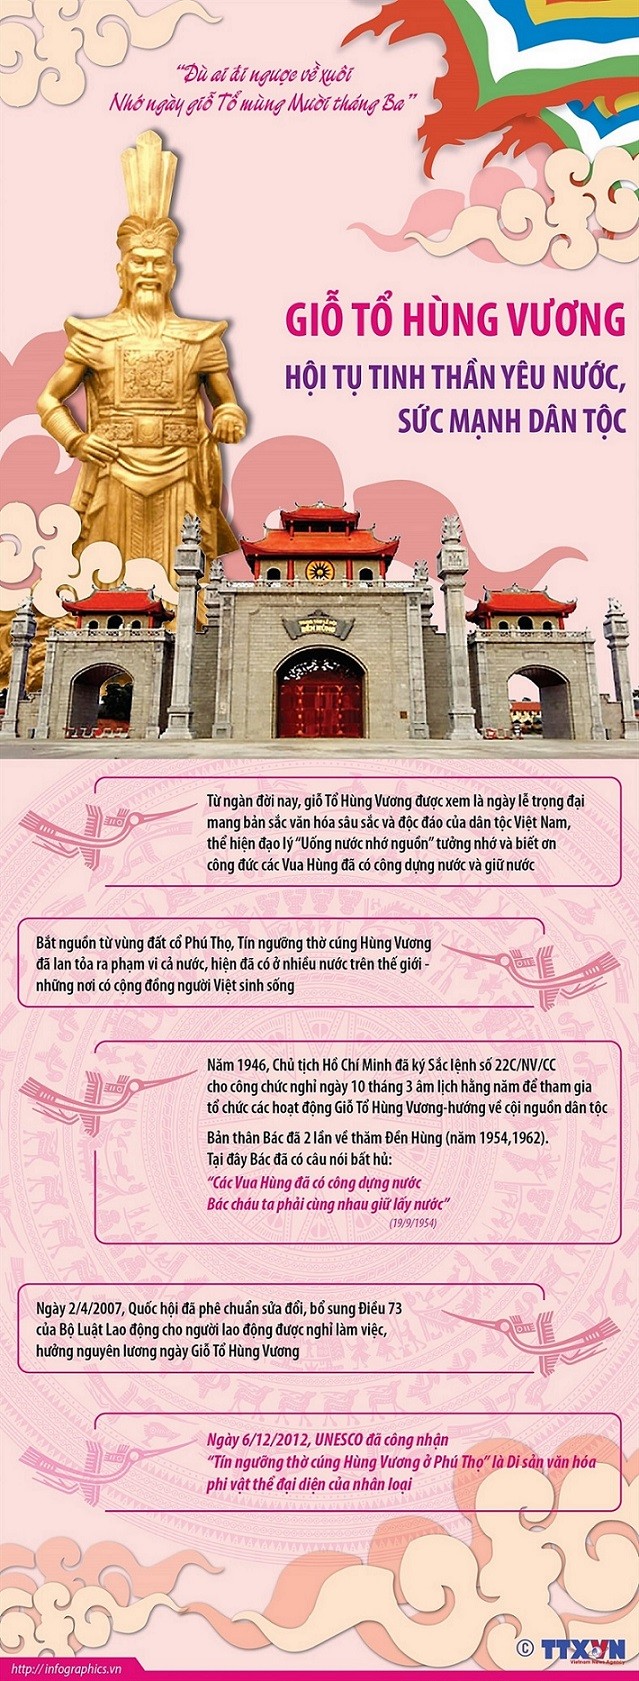 Giỗ Tổ Hùng Vương - ‘sợi chỉ đỏ’ tạo nên truyền thống đoàn kết, thương yêu, đùm bọc của đại gia đình các dân tộc Việt Nam